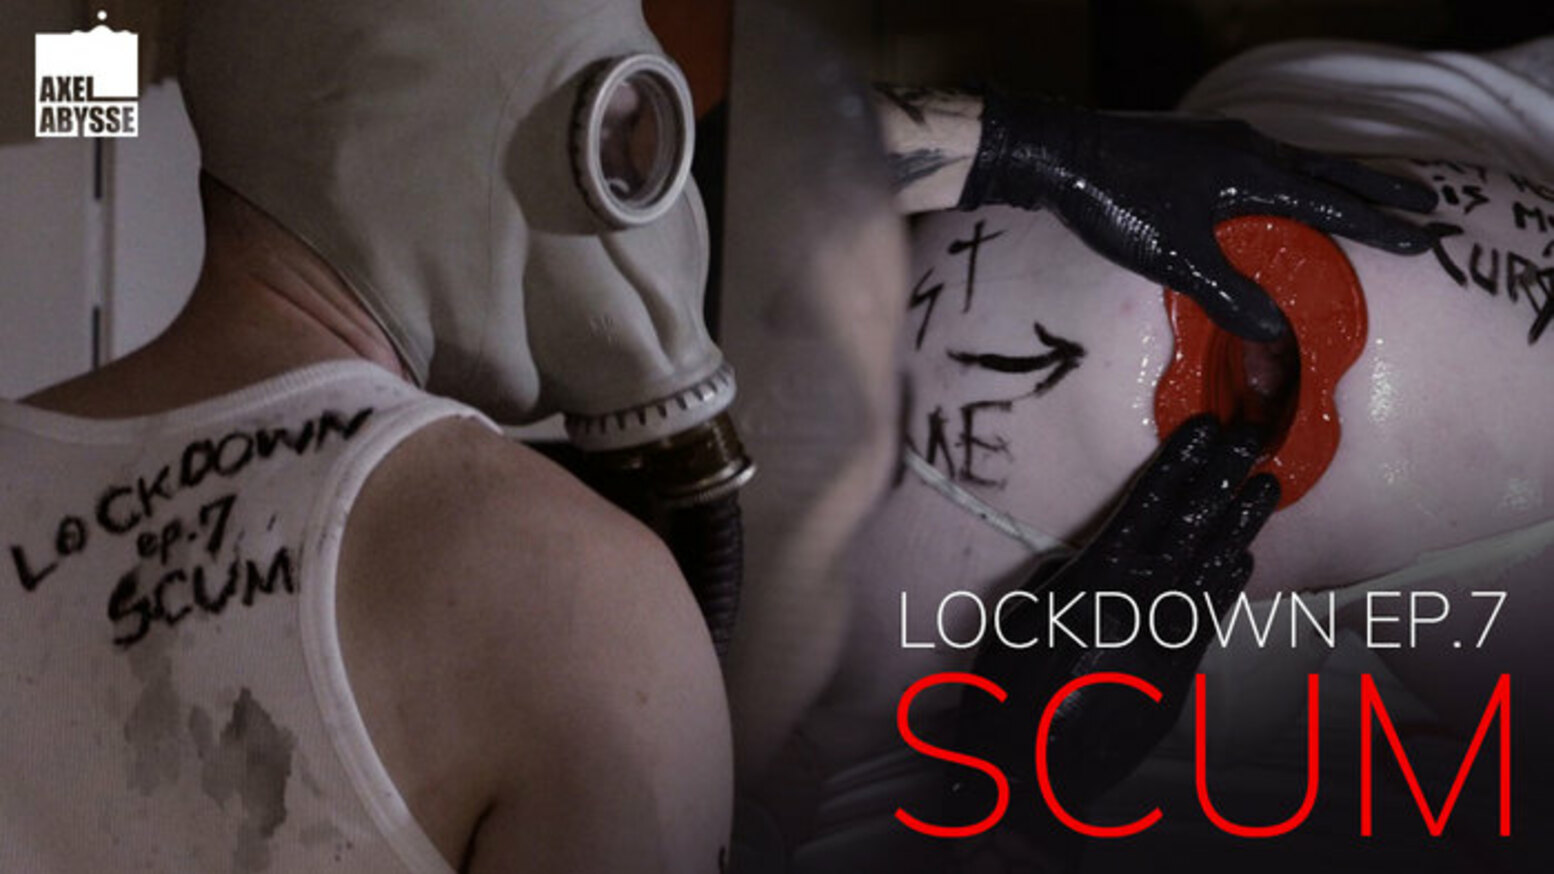 Lockdown Ep 7: Scum